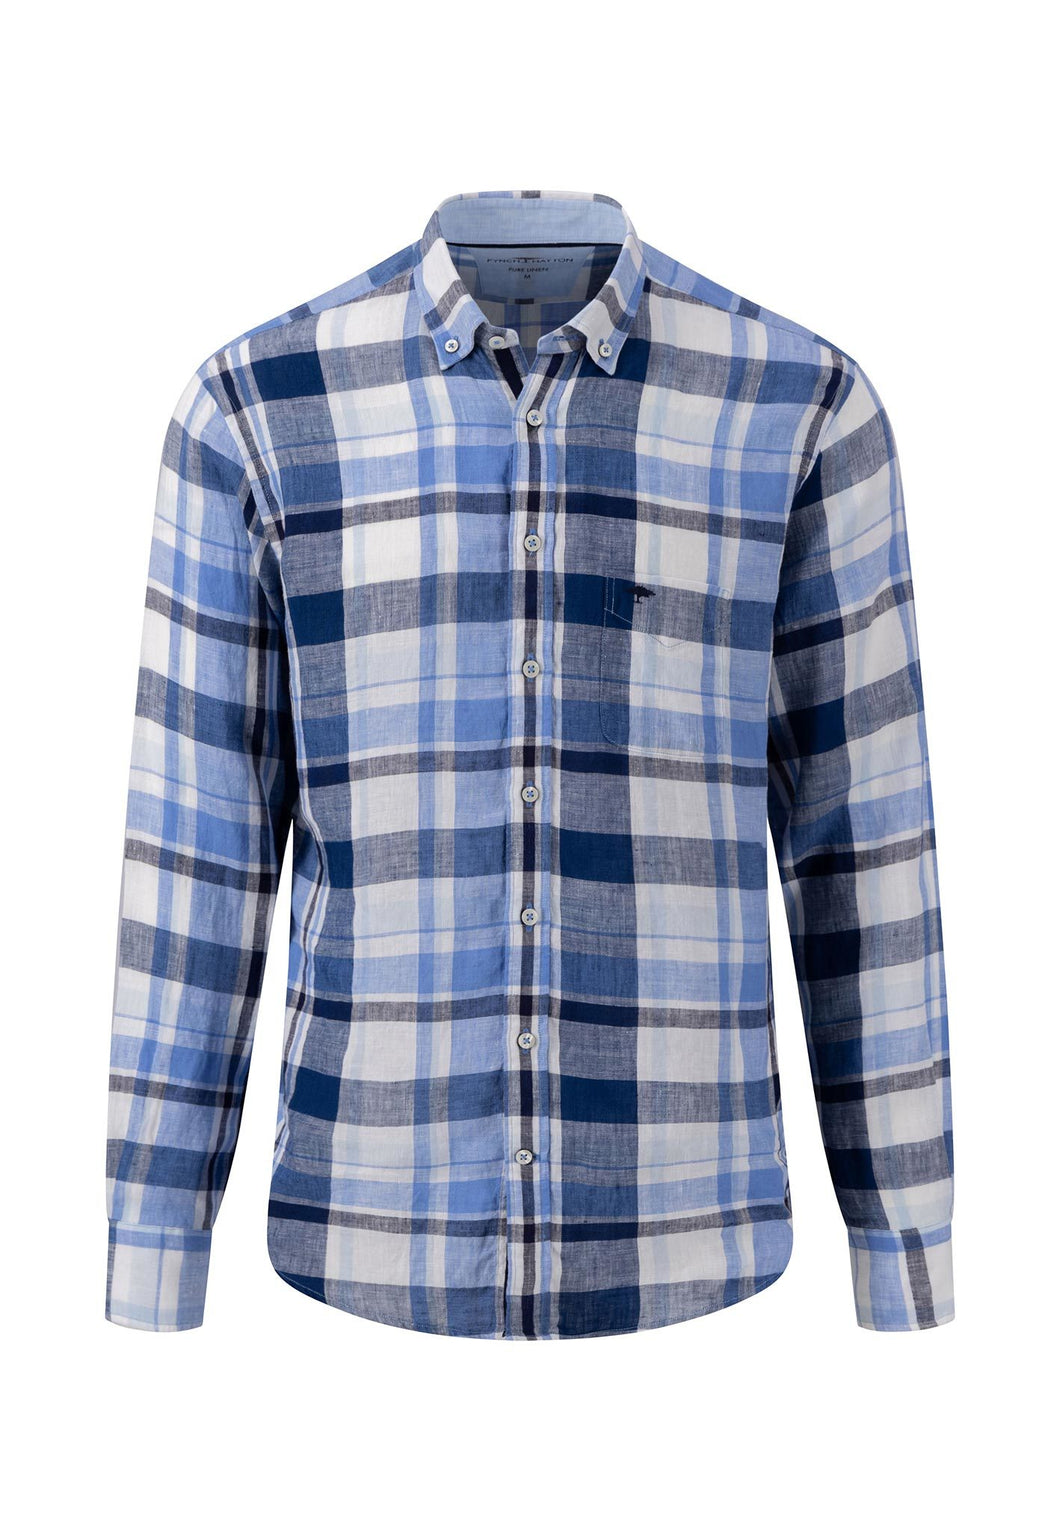 New Fynch Hatton Big Check Linen Long Sleeve Shirt